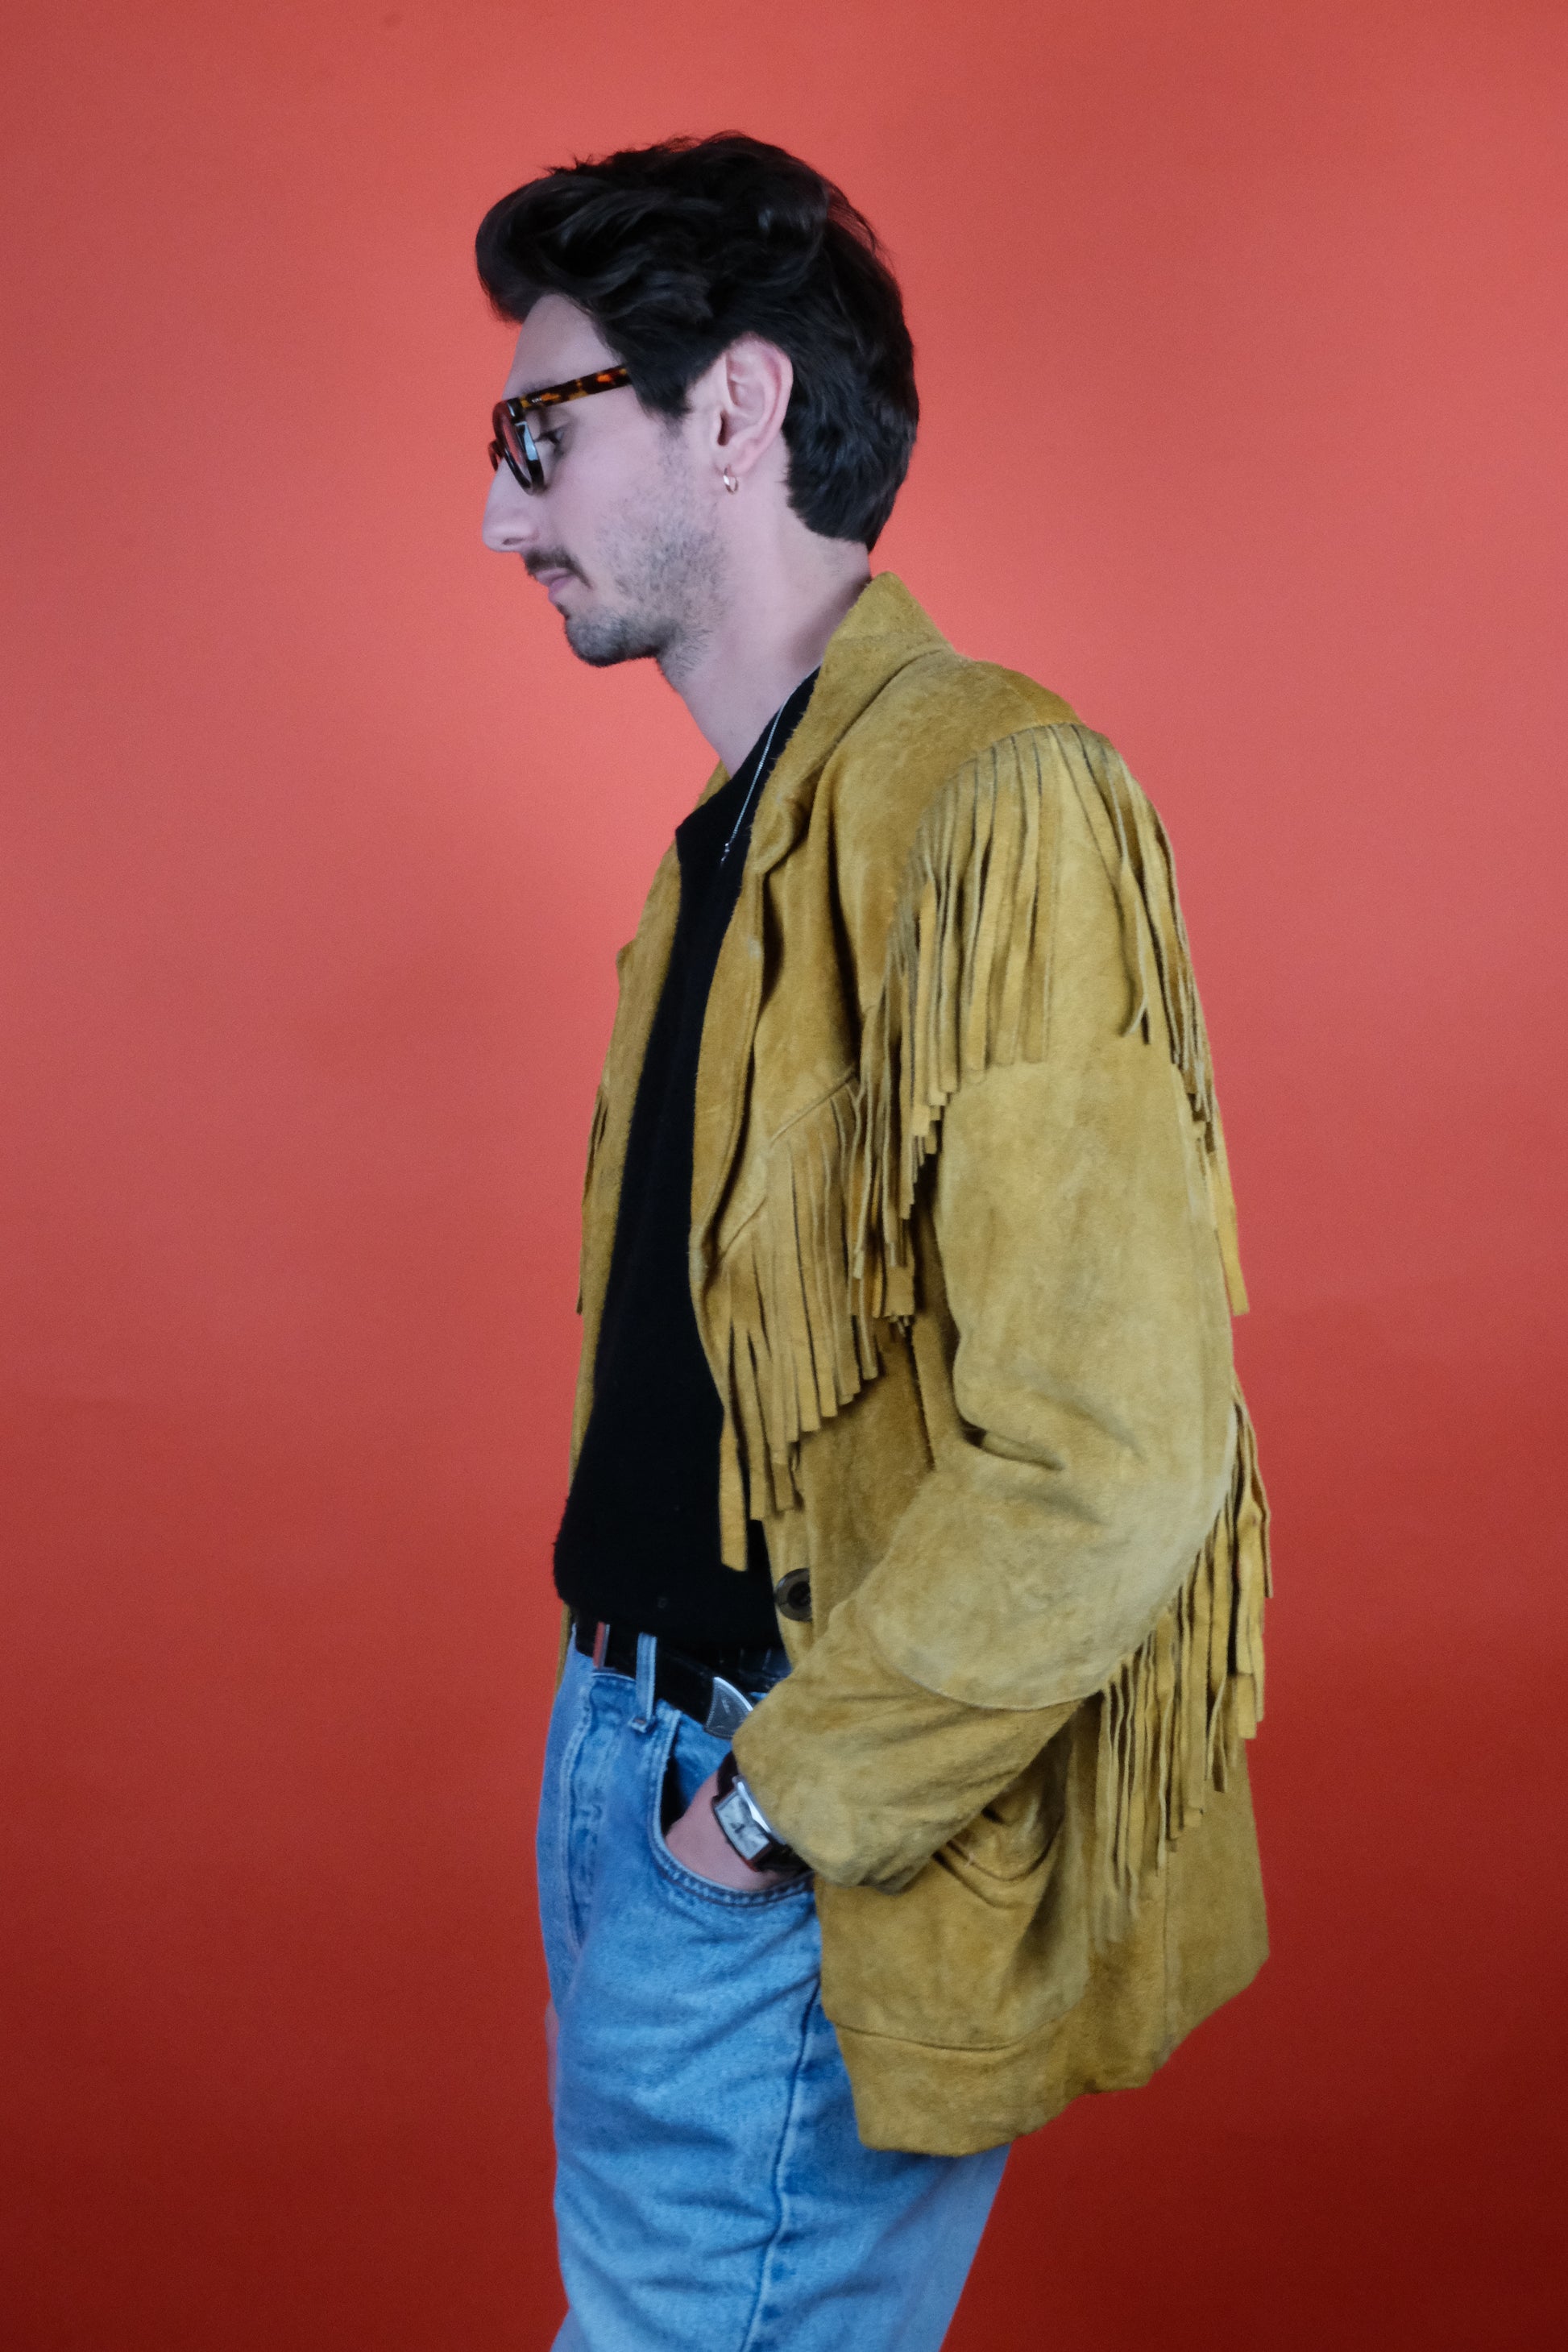 Fringe Suede Jacket 'M' Made in Argentina - vintage clothing clochard92.com